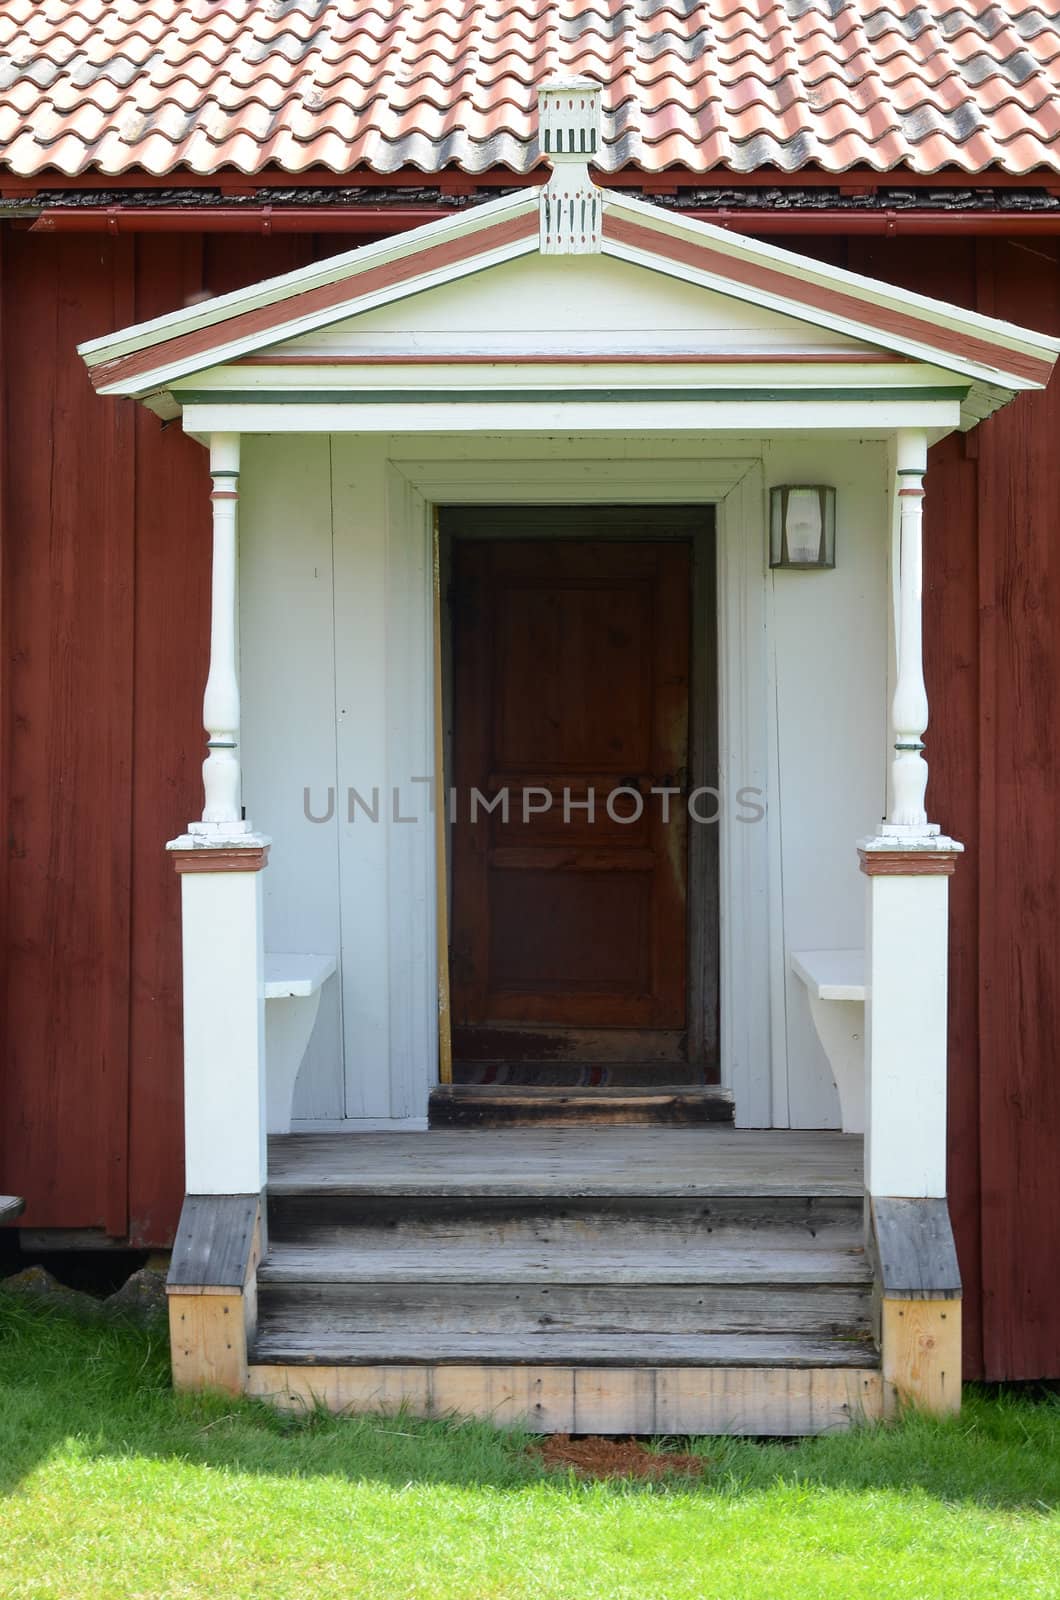 Entrance facade to a farm by ljusnan69